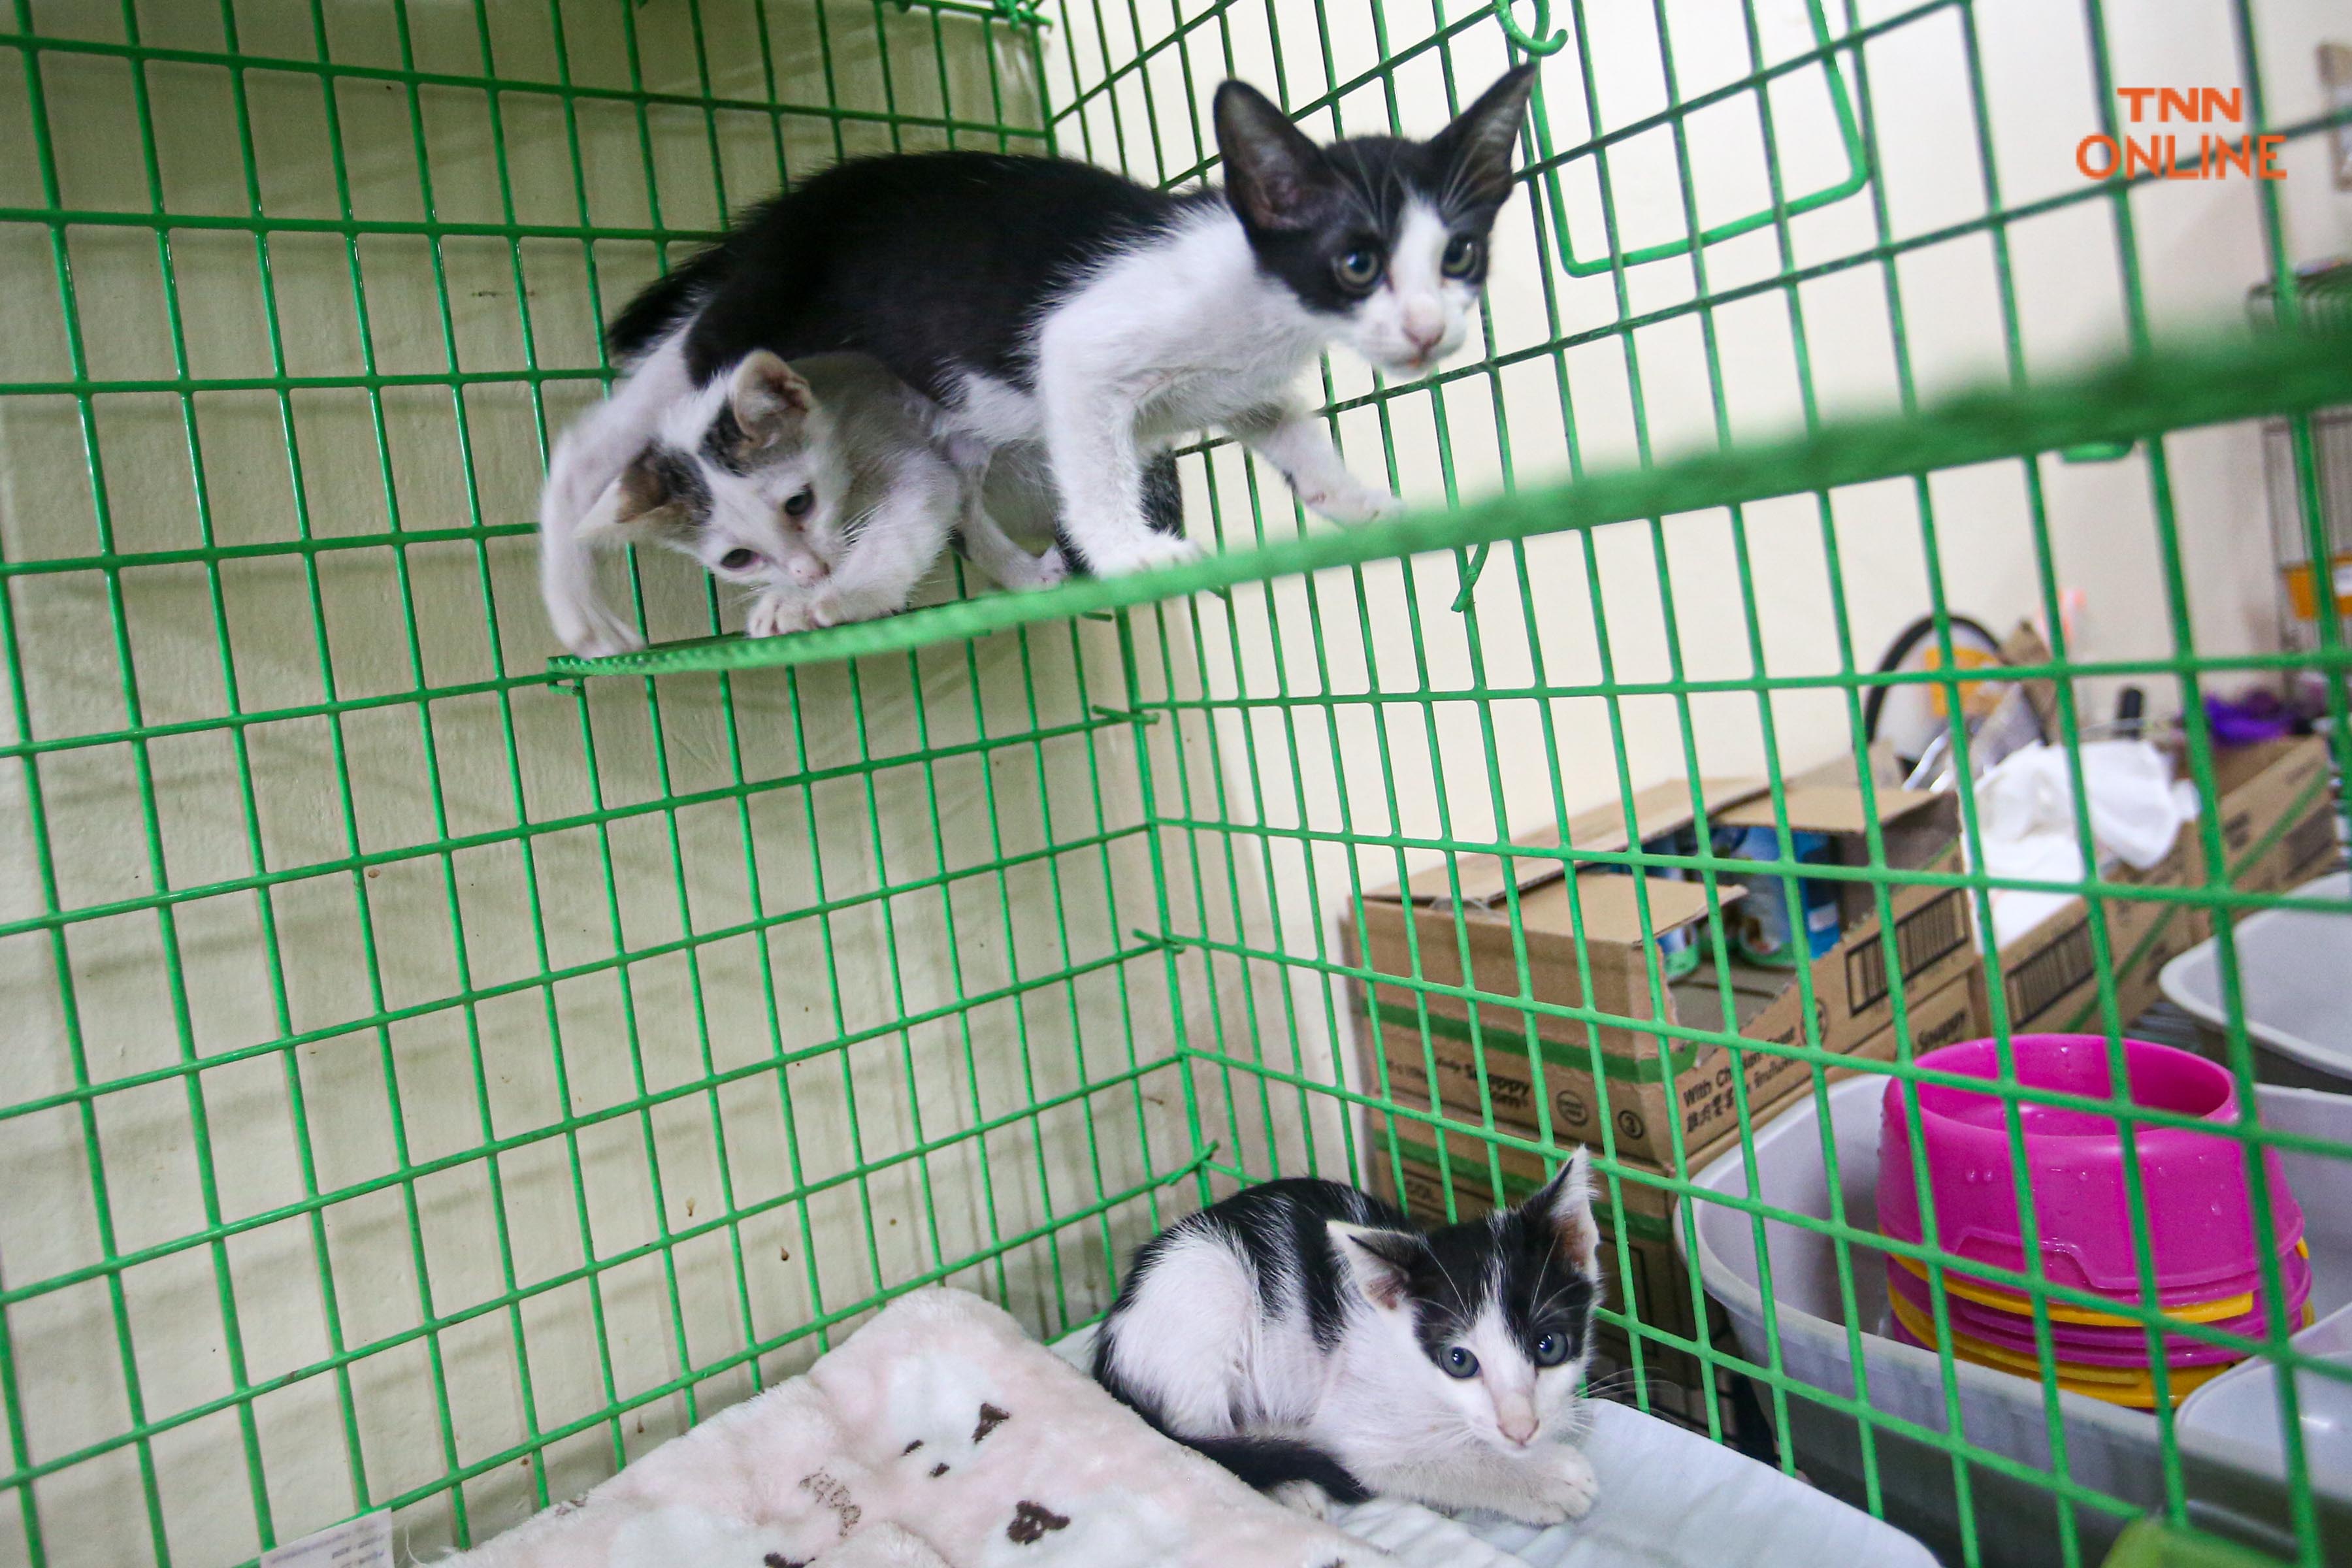  “Catster by Kingdomoftigers” จุดพักพิงแมวจรก่อนส่งต่อสู่บ้านใหม่